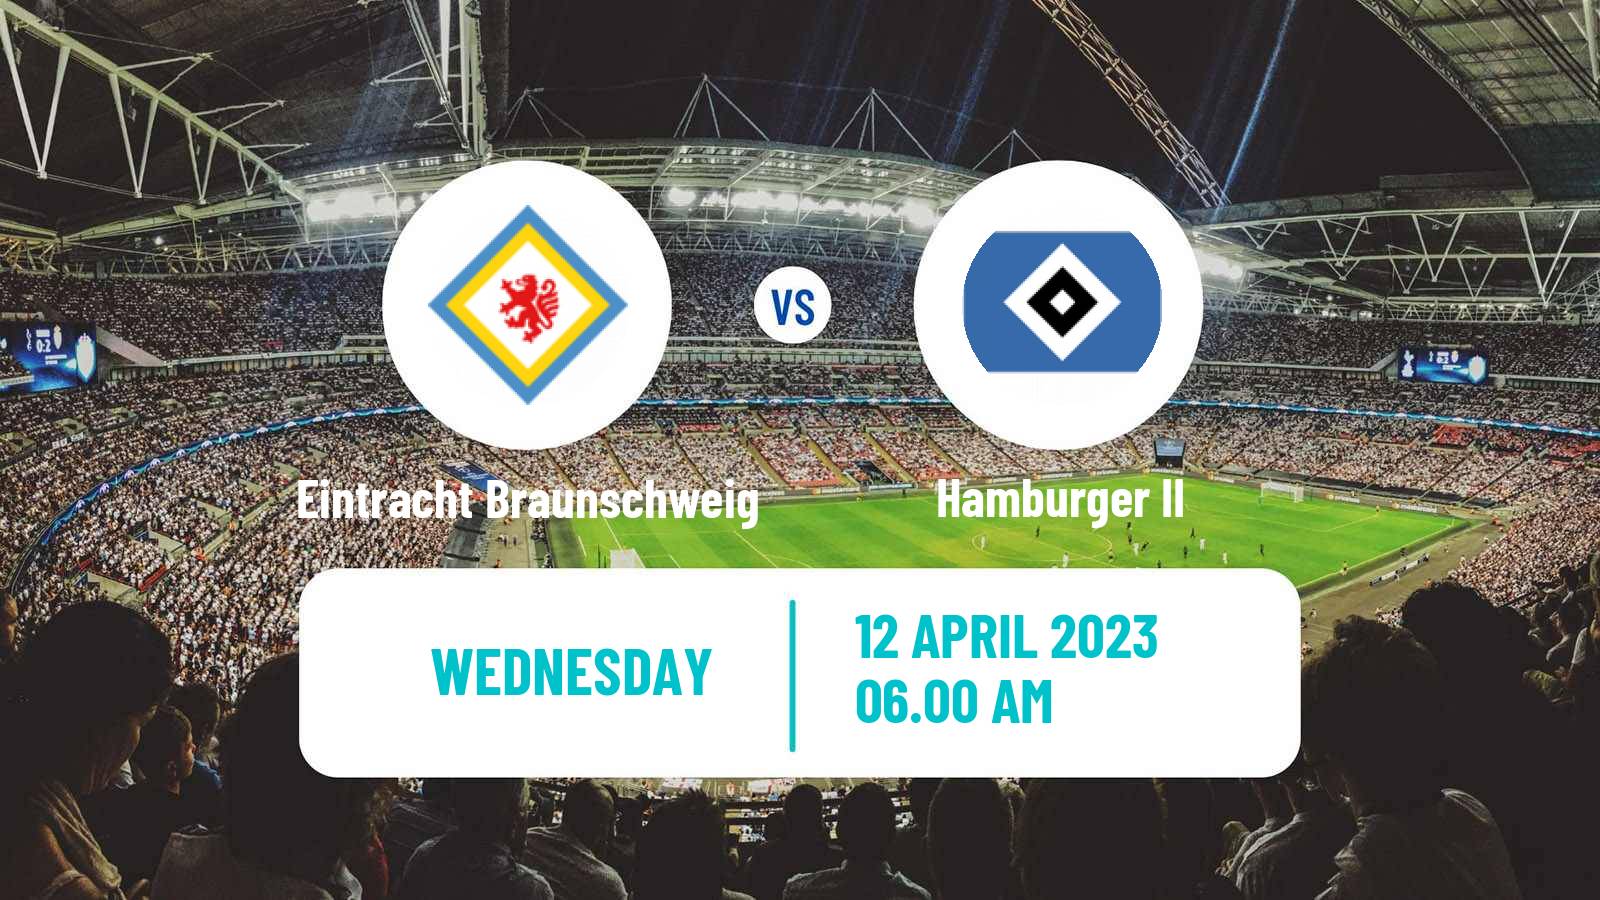 Soccer Club Friendly Eintracht Braunschweig - Hamburger II